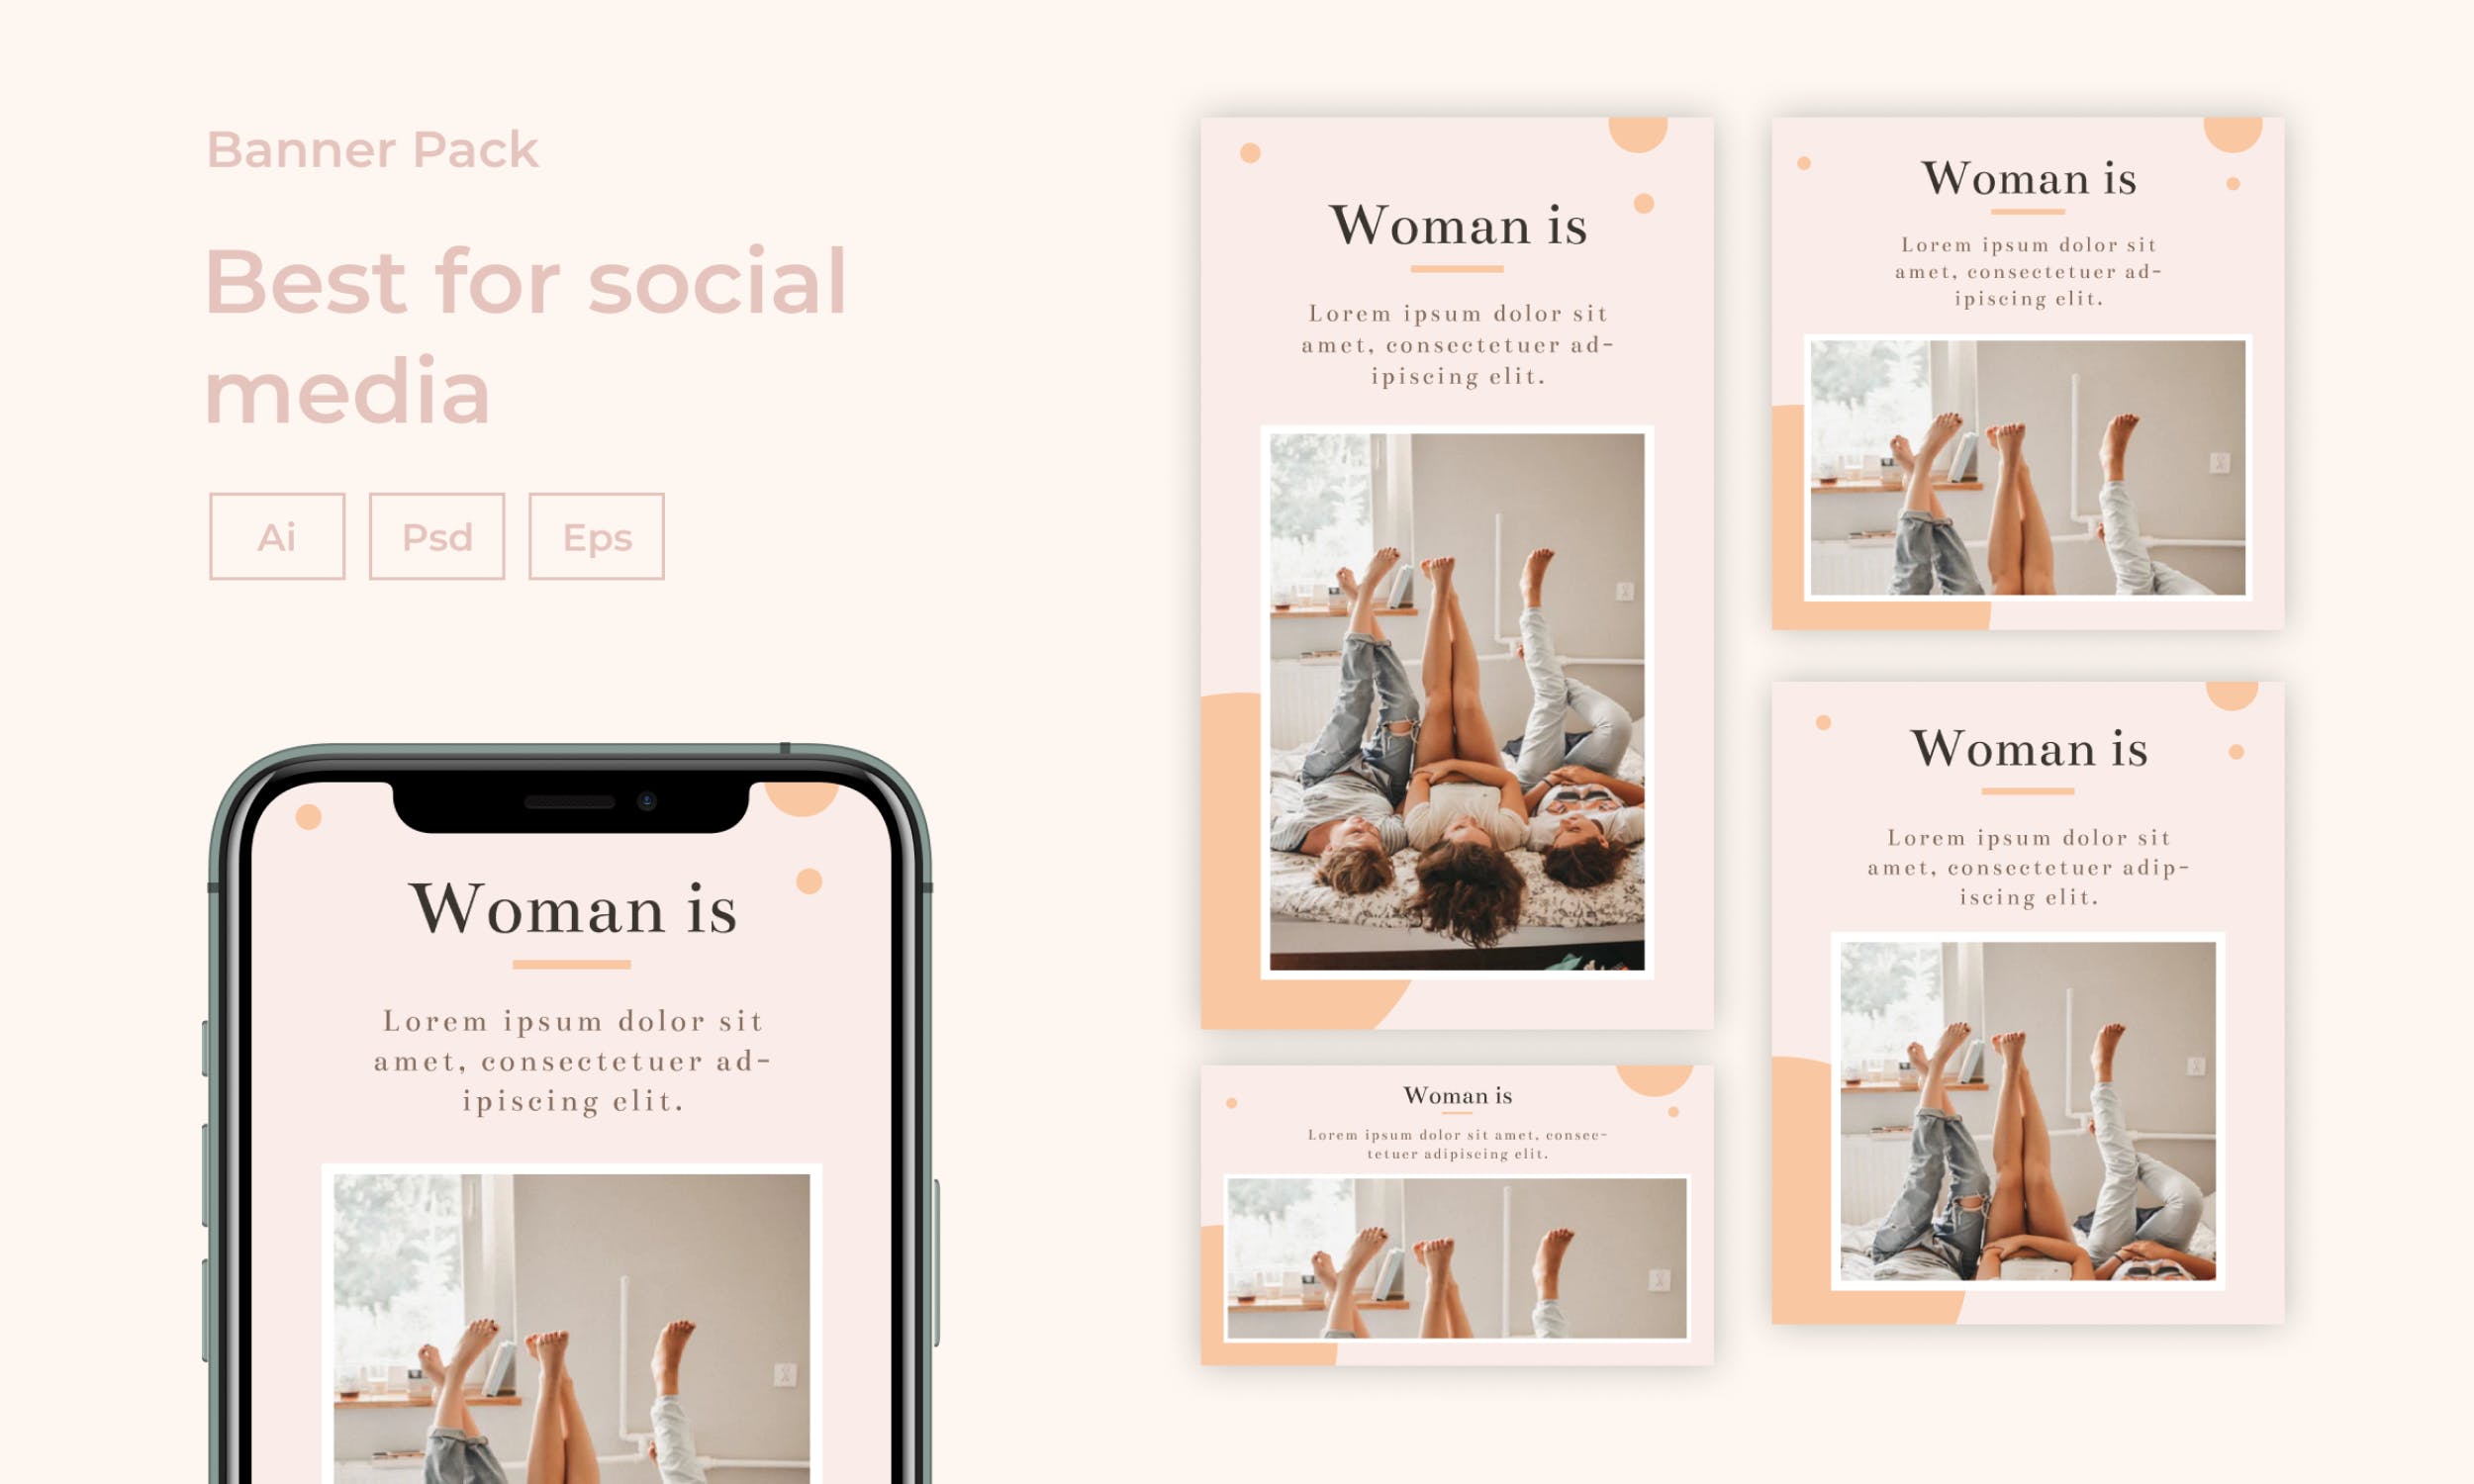 女性时尚主题社交媒体贴图设计素材包 Social Media Post Kit – [code OP]设计素材模板